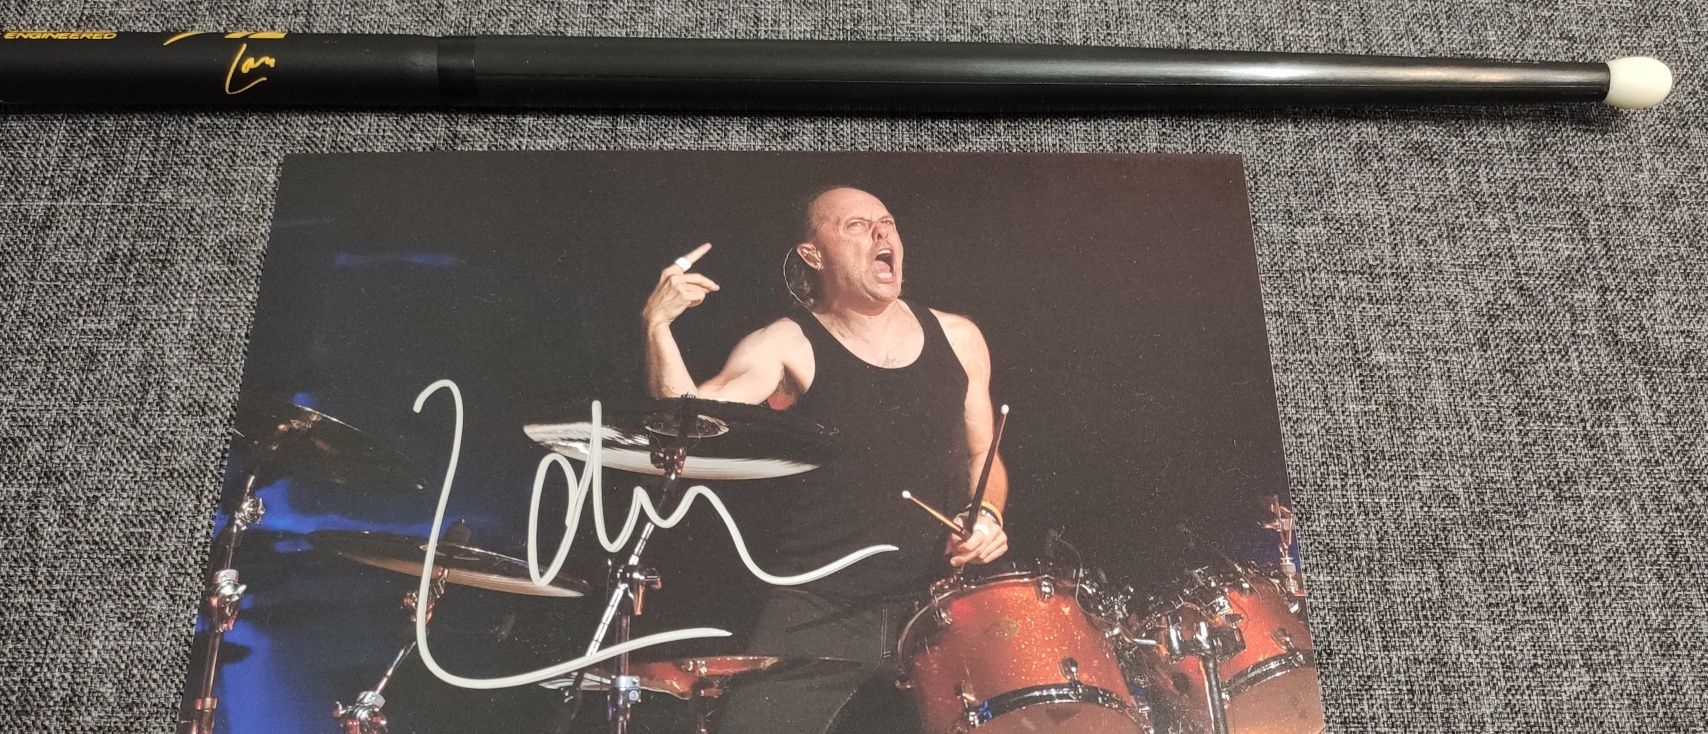 Автограф и барабанная палочка Metallica. Ларс Ульрих. Lars Ulrich.